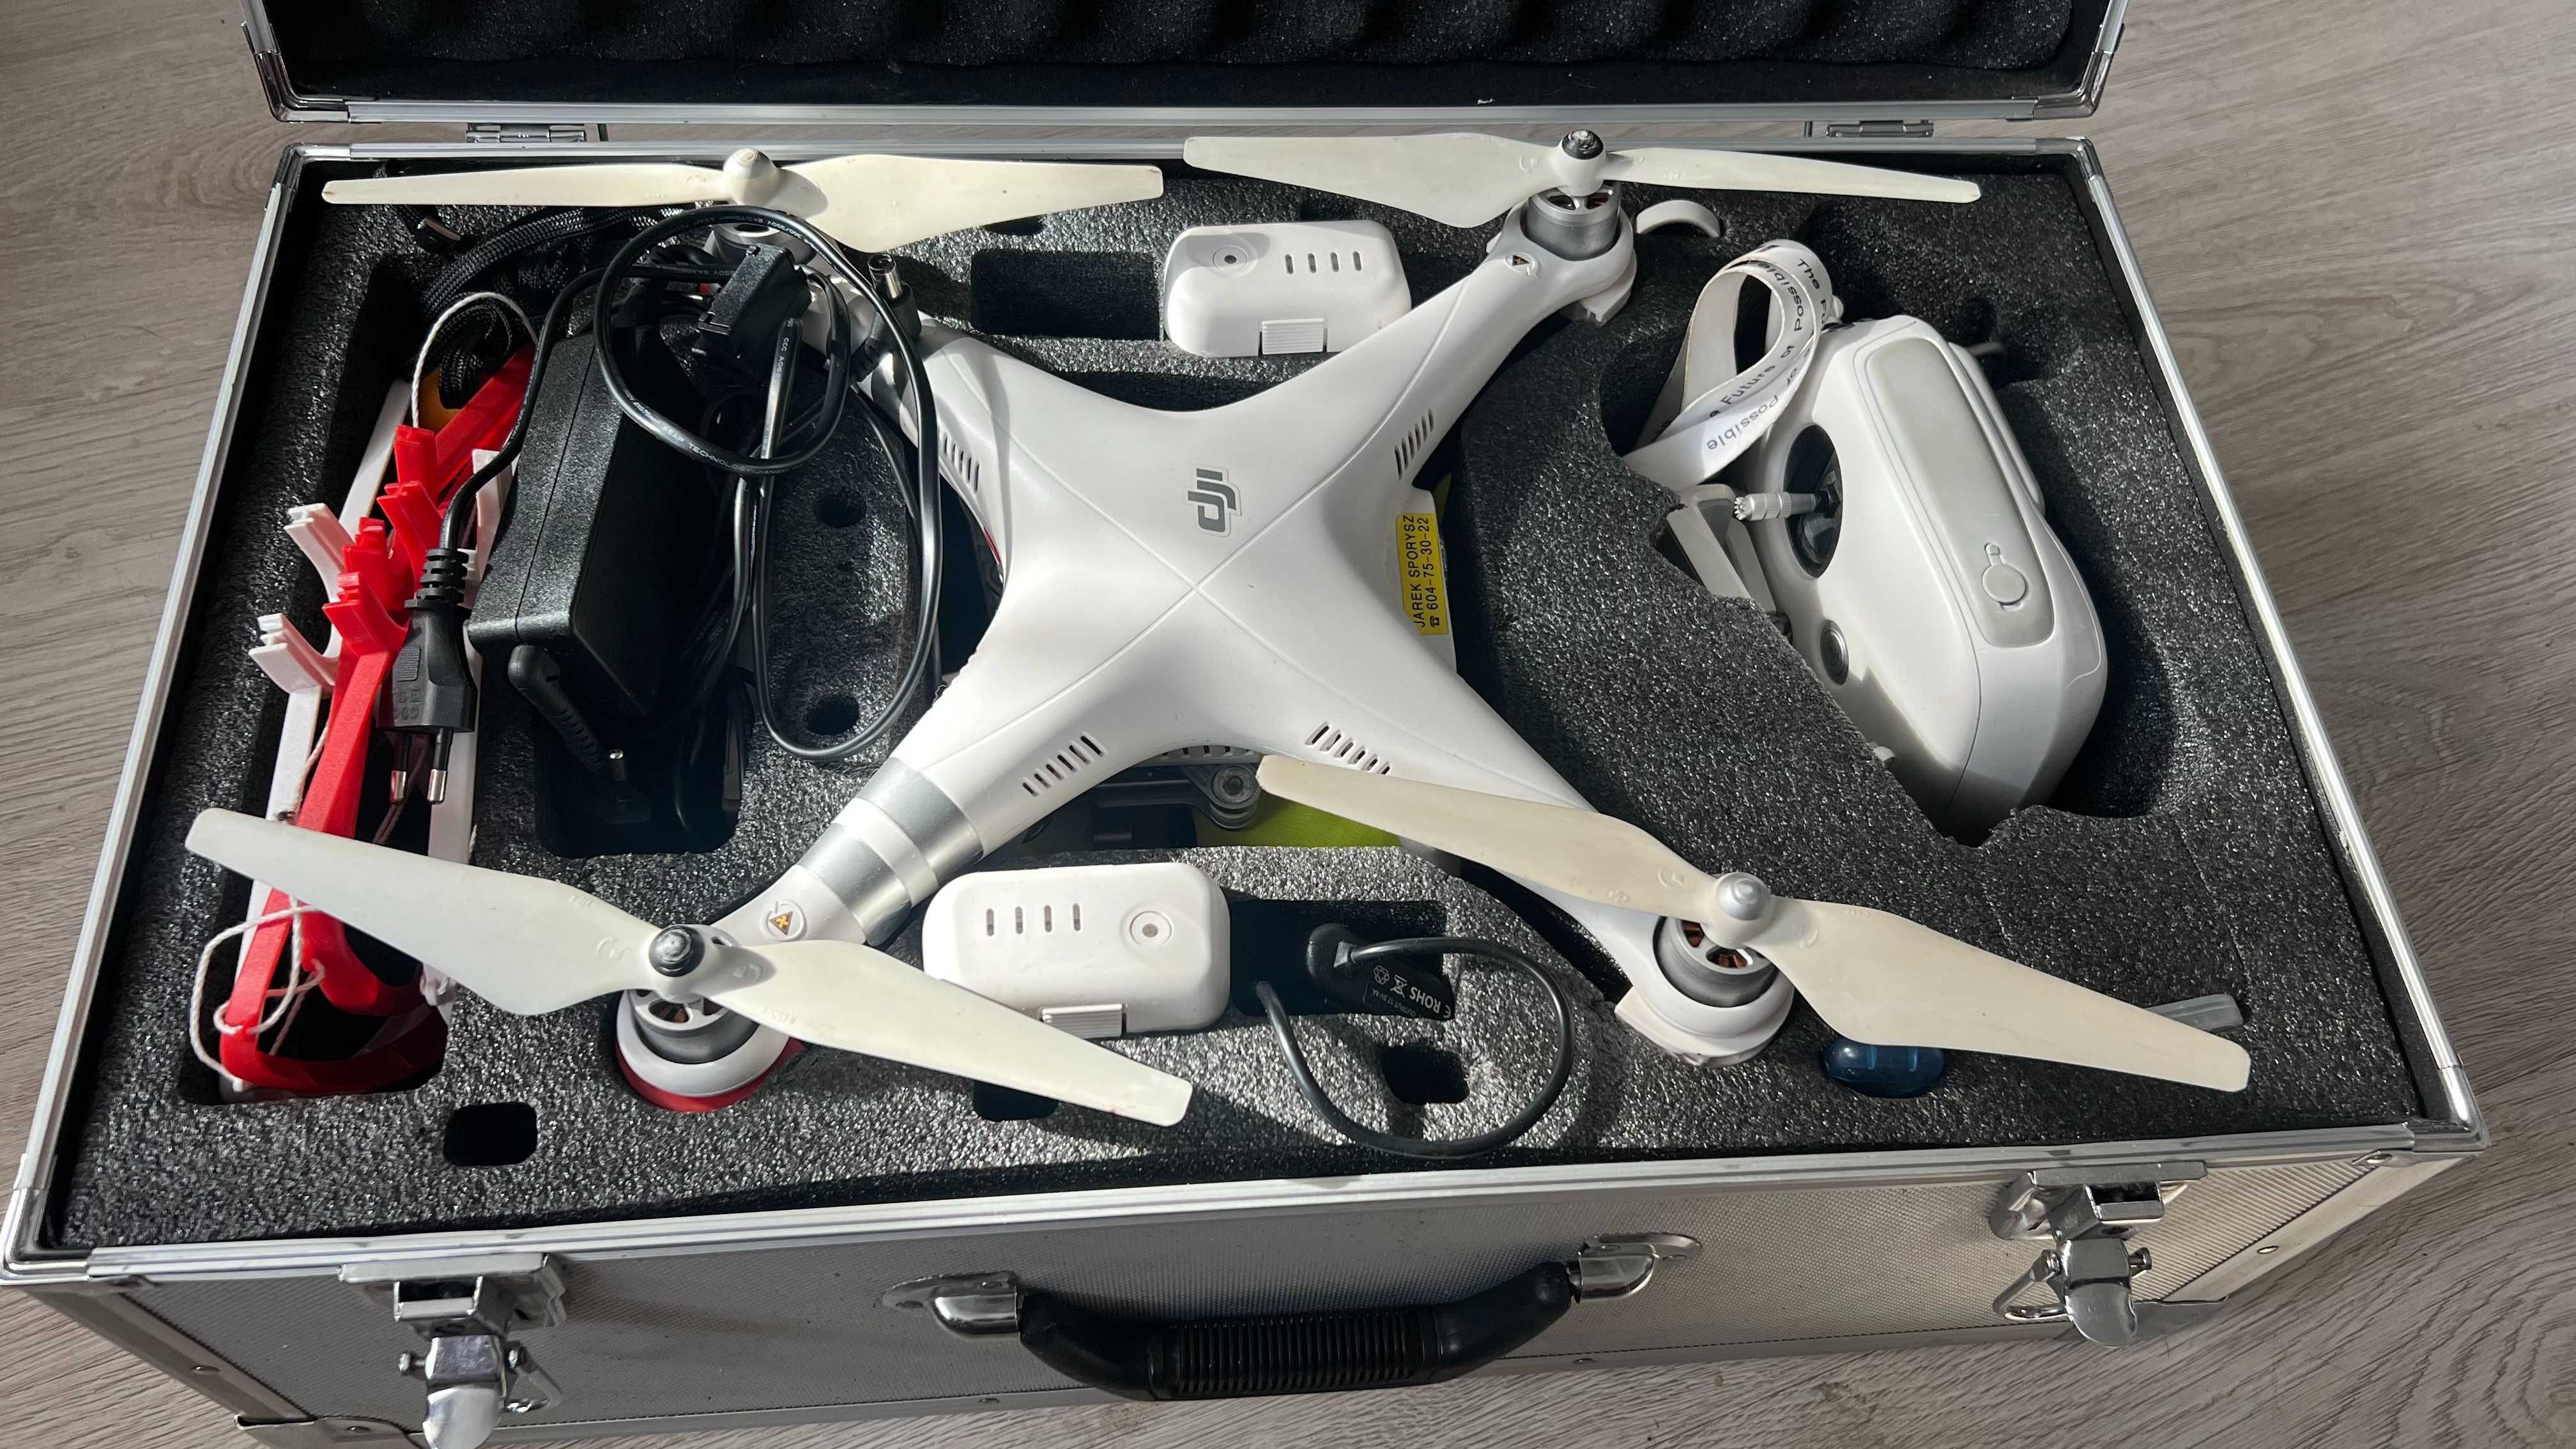 Dron DJI Phantom 3 Advanced + Duży zestaw dodatków